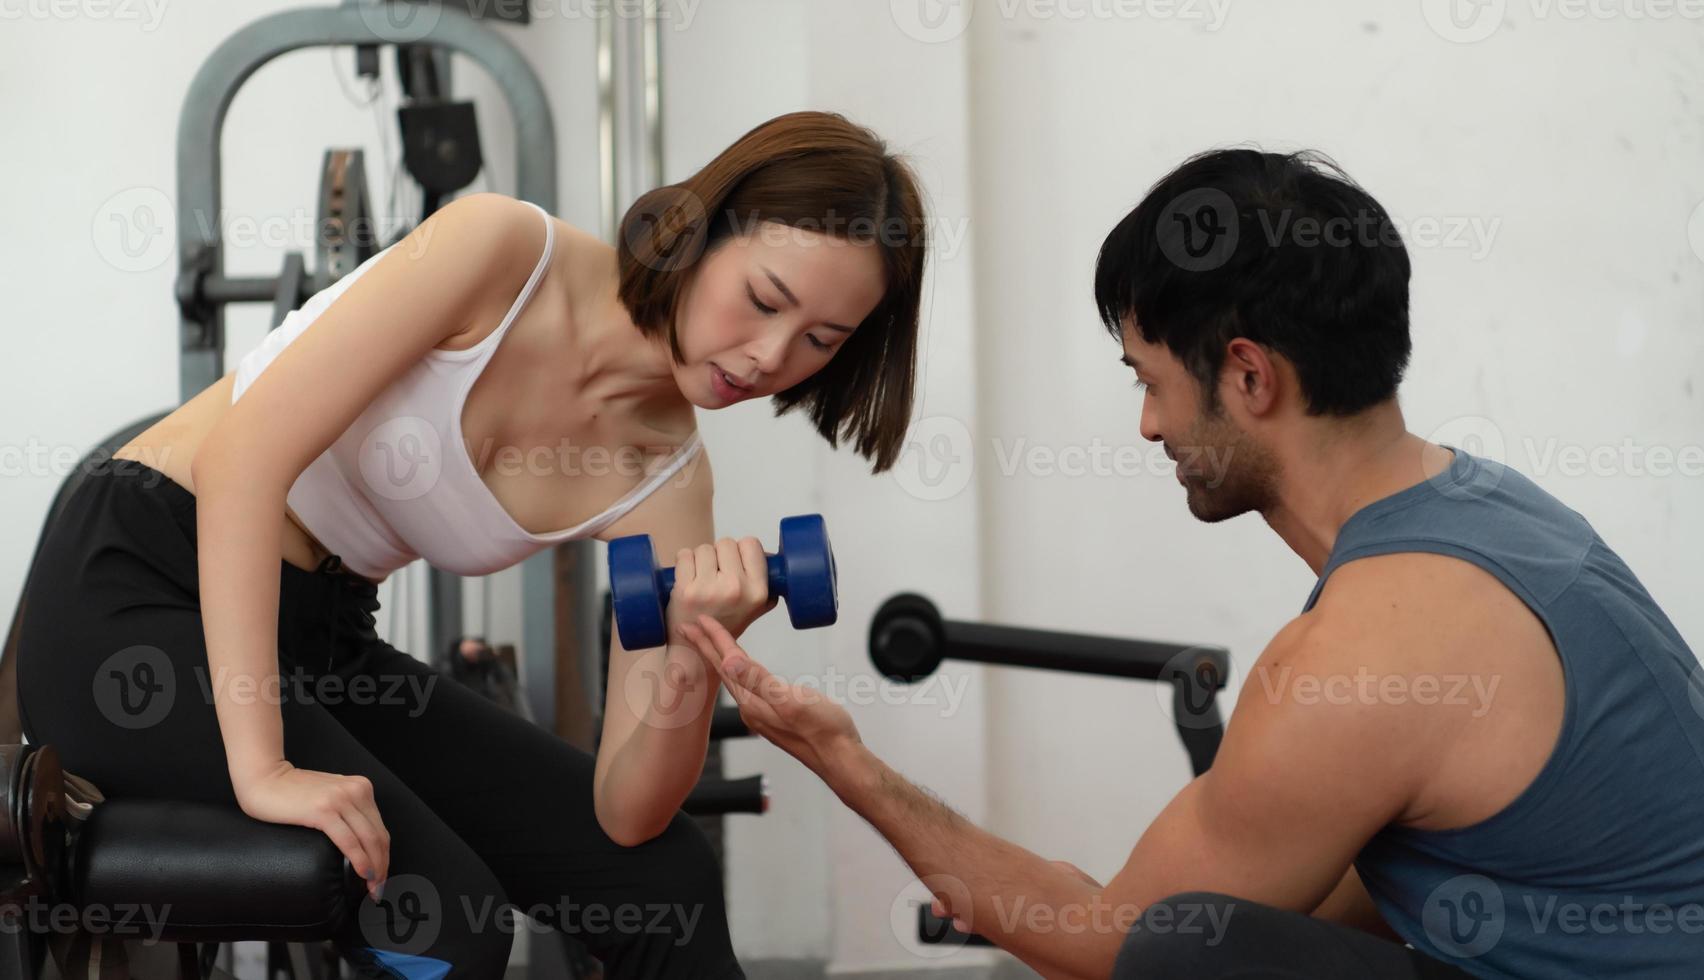 jeune couple faisant de l'exercice dans une salle de sport lors de la levée de poids, ils s'entraident. concept de musculation et de vie saine photo